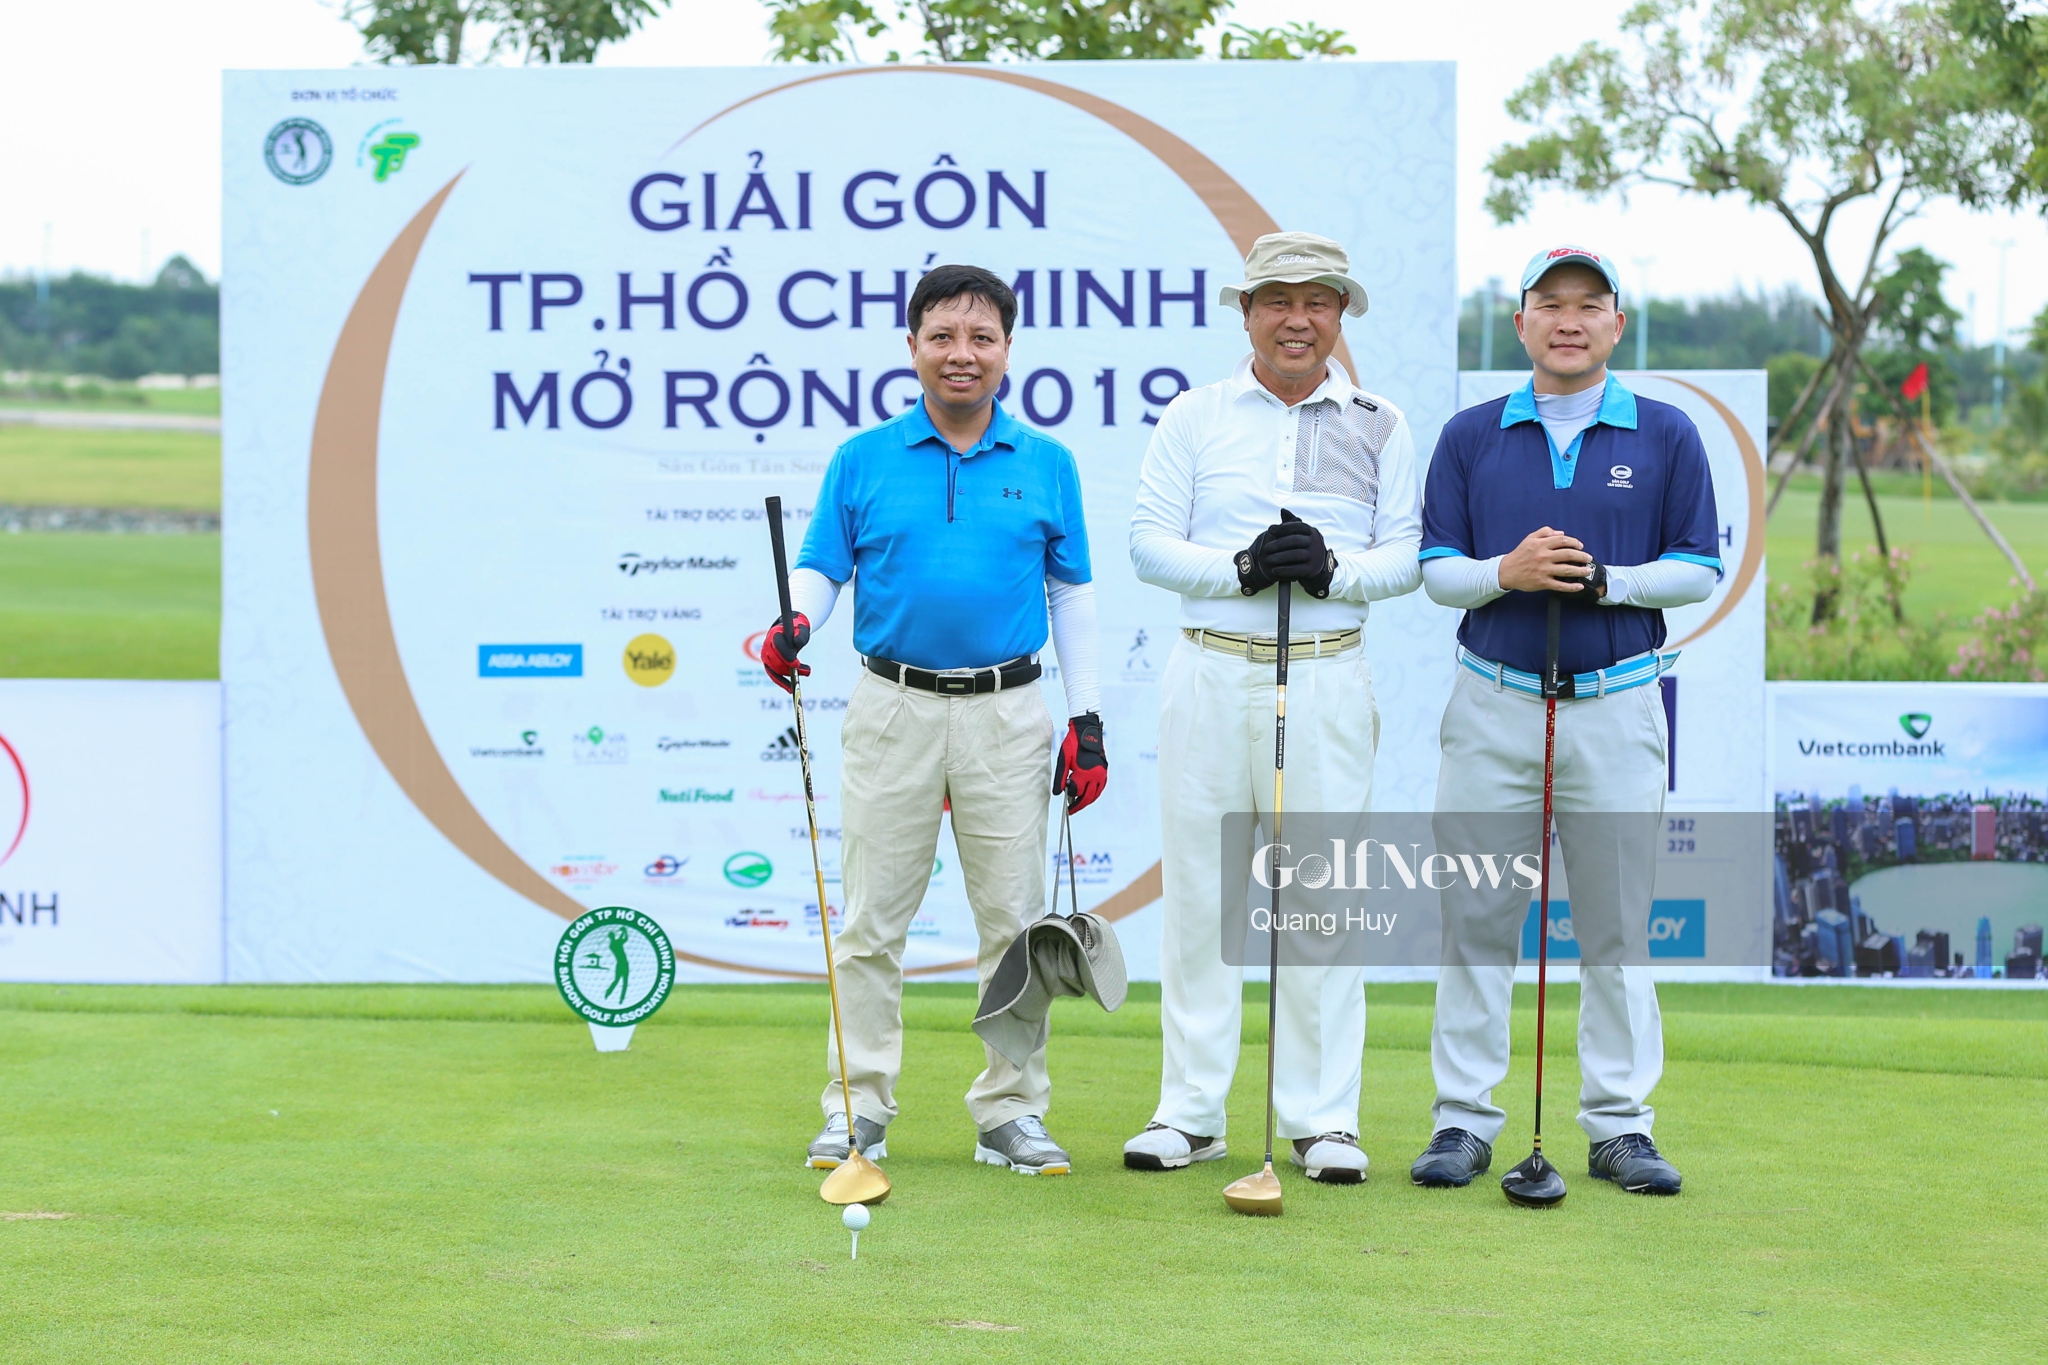 Giải golf TP. HCM Mở rộng 2019: Nơi hội tụ của những golfer hàng đầu Phía Nam